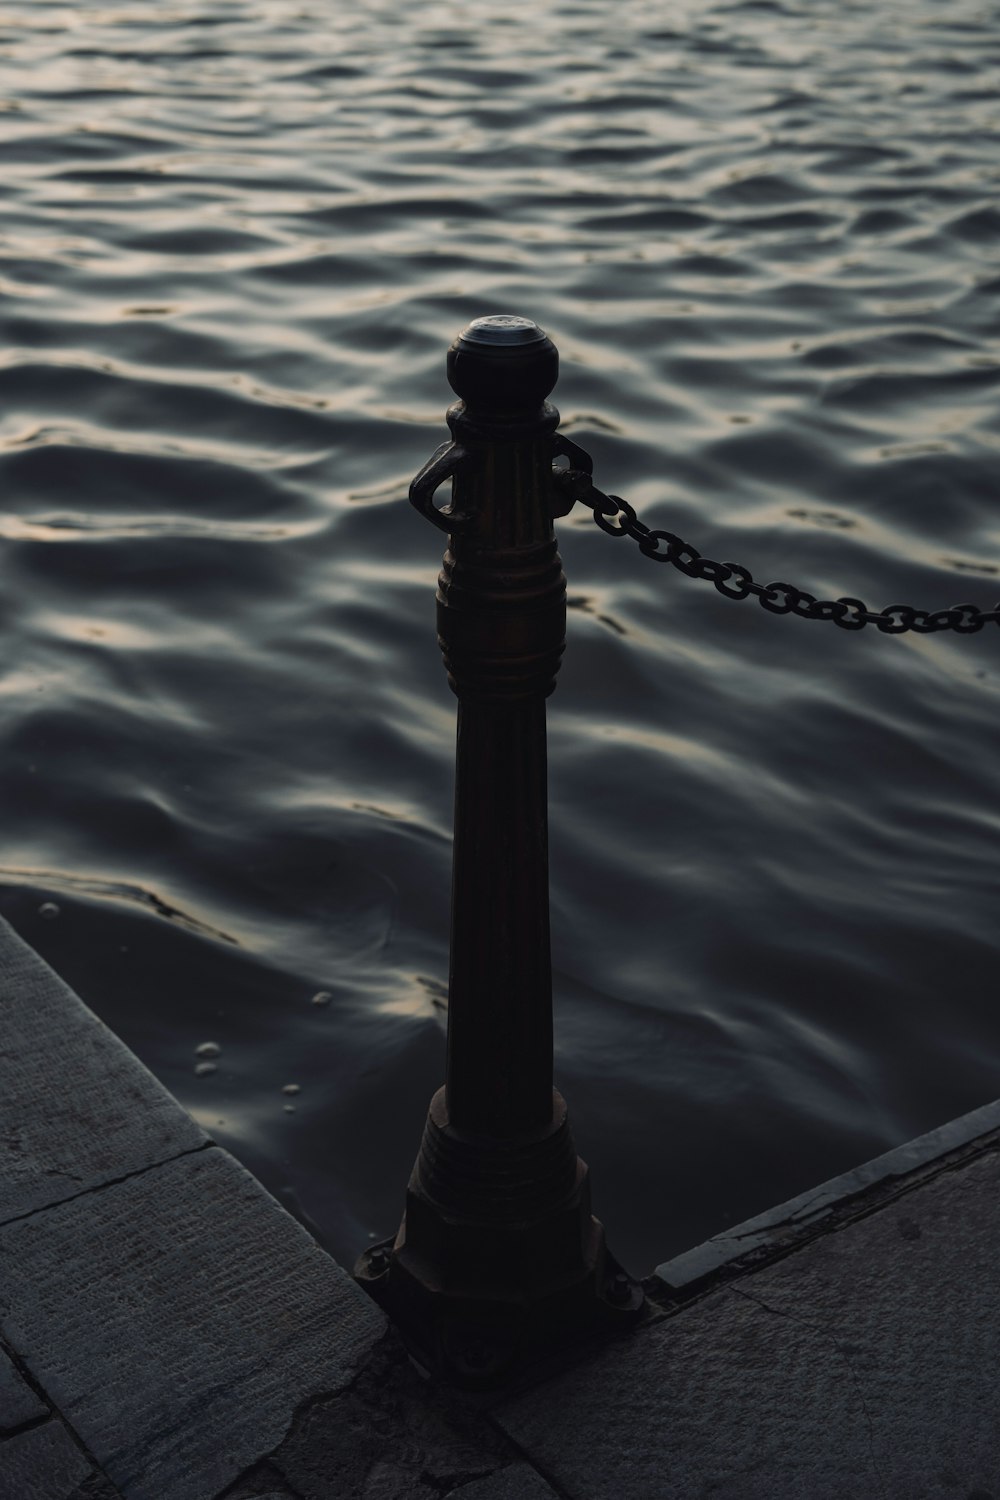 a black pole on a dock